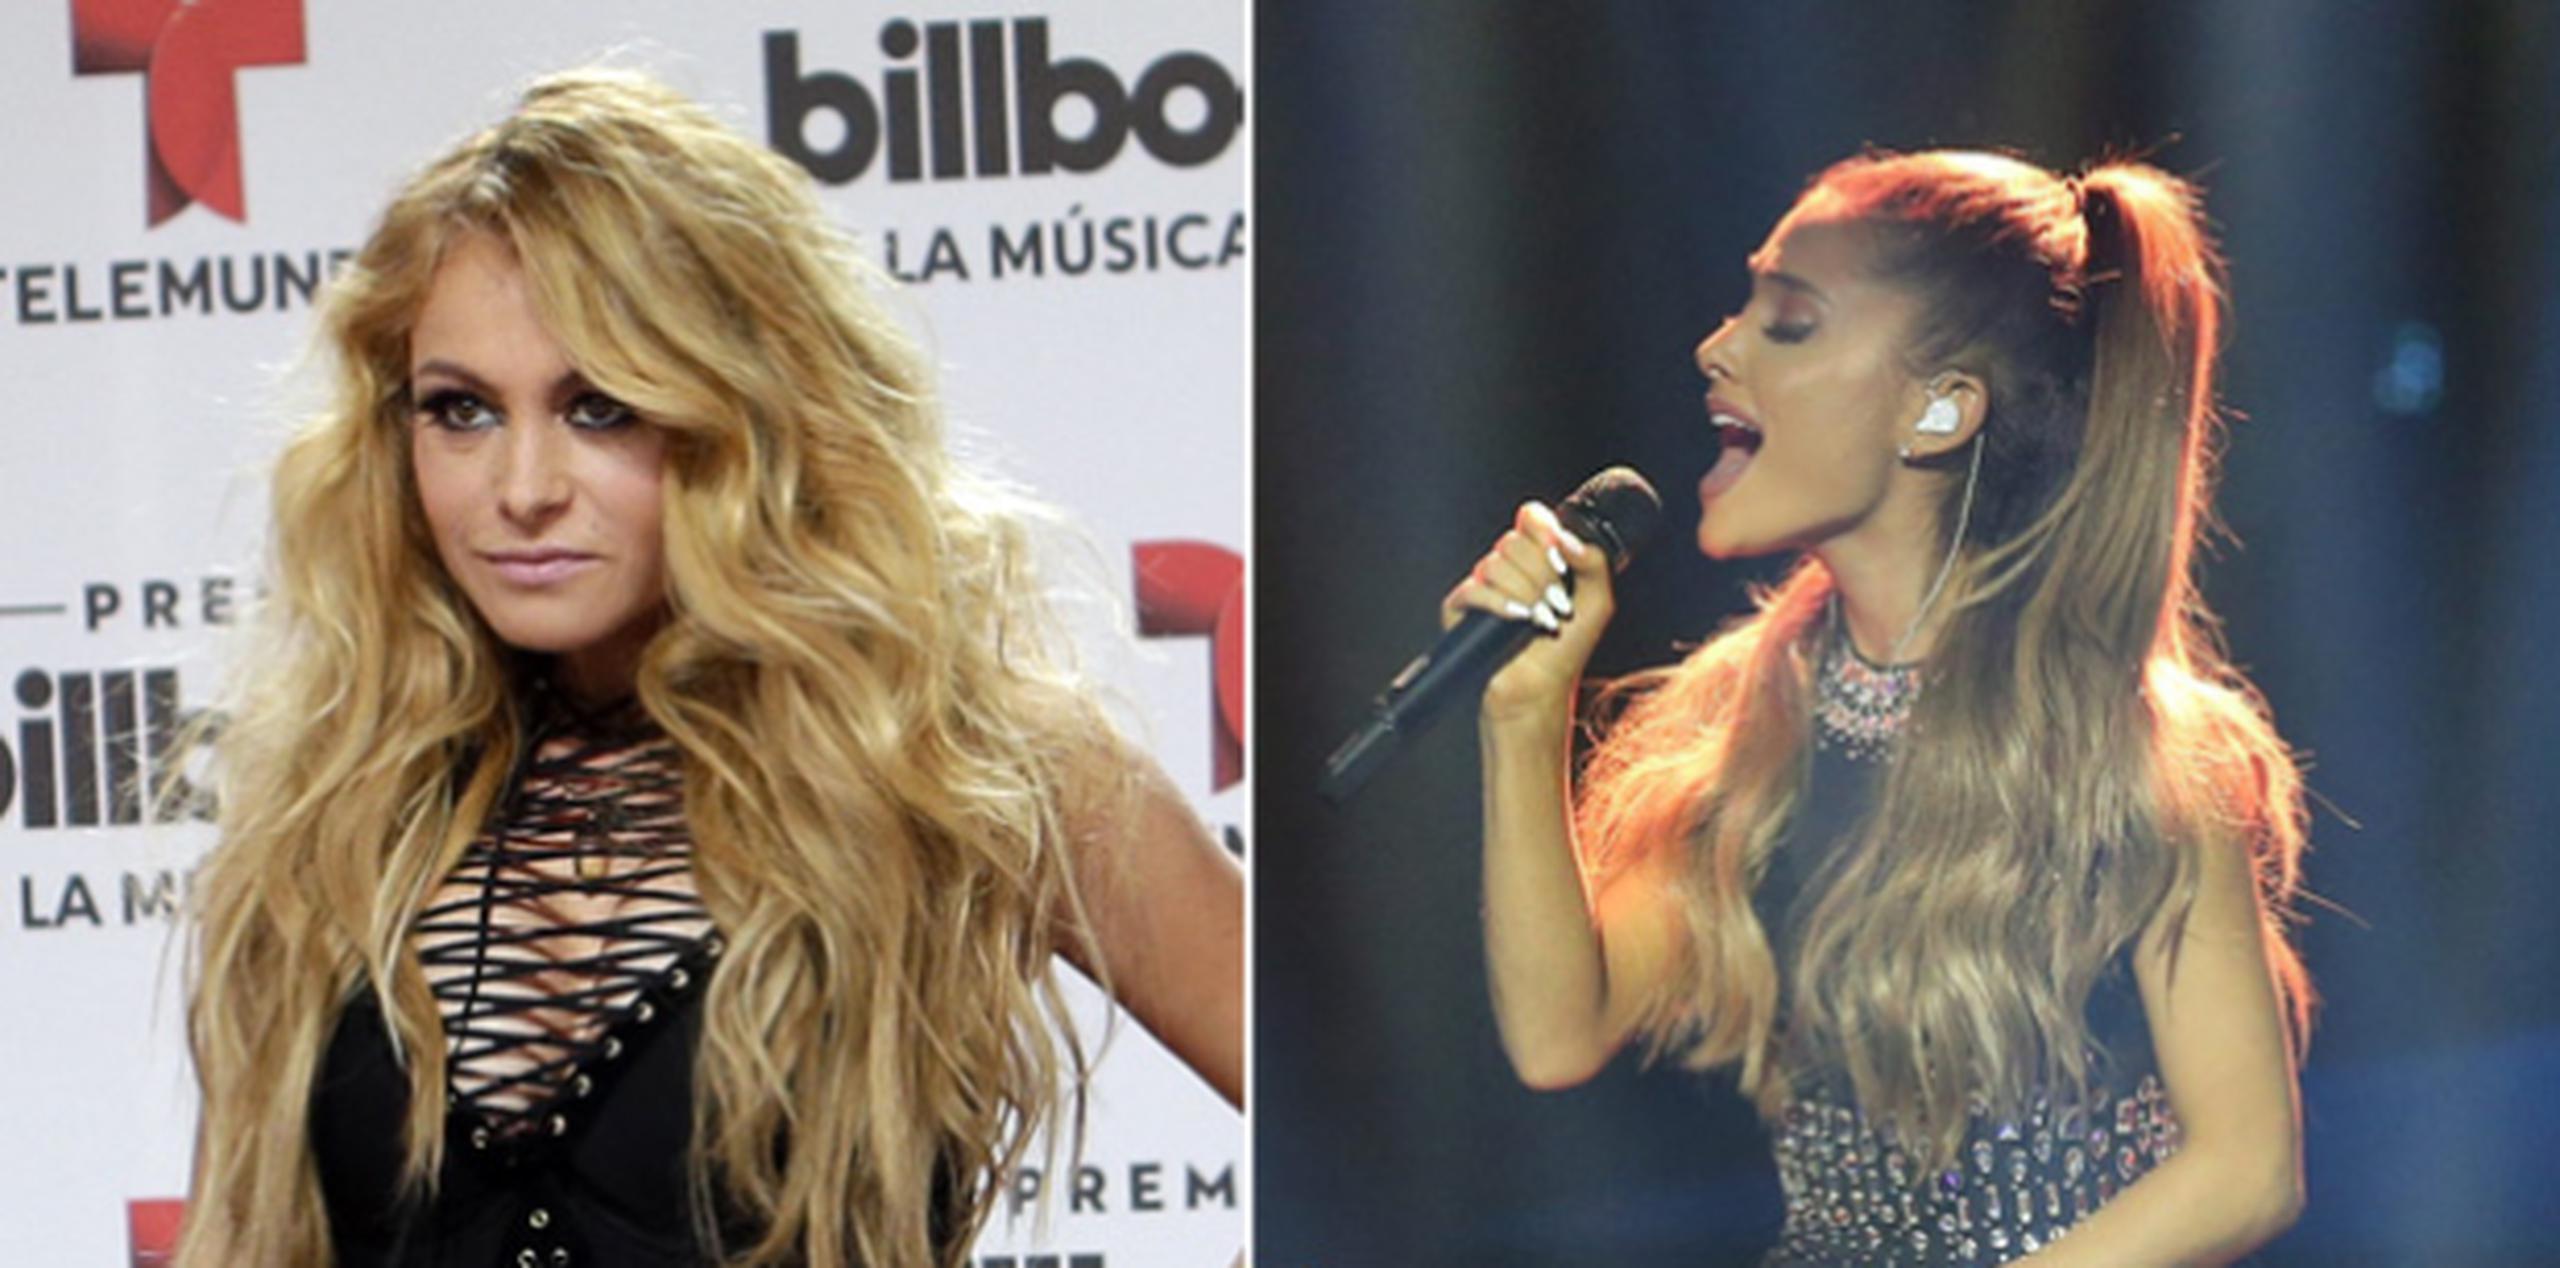 Ariana Grande suspendió su gira mundial luego del ataque. A la izquierda, Paulina Rubio. (Archivo / EFE / Wolfgang Kumm)